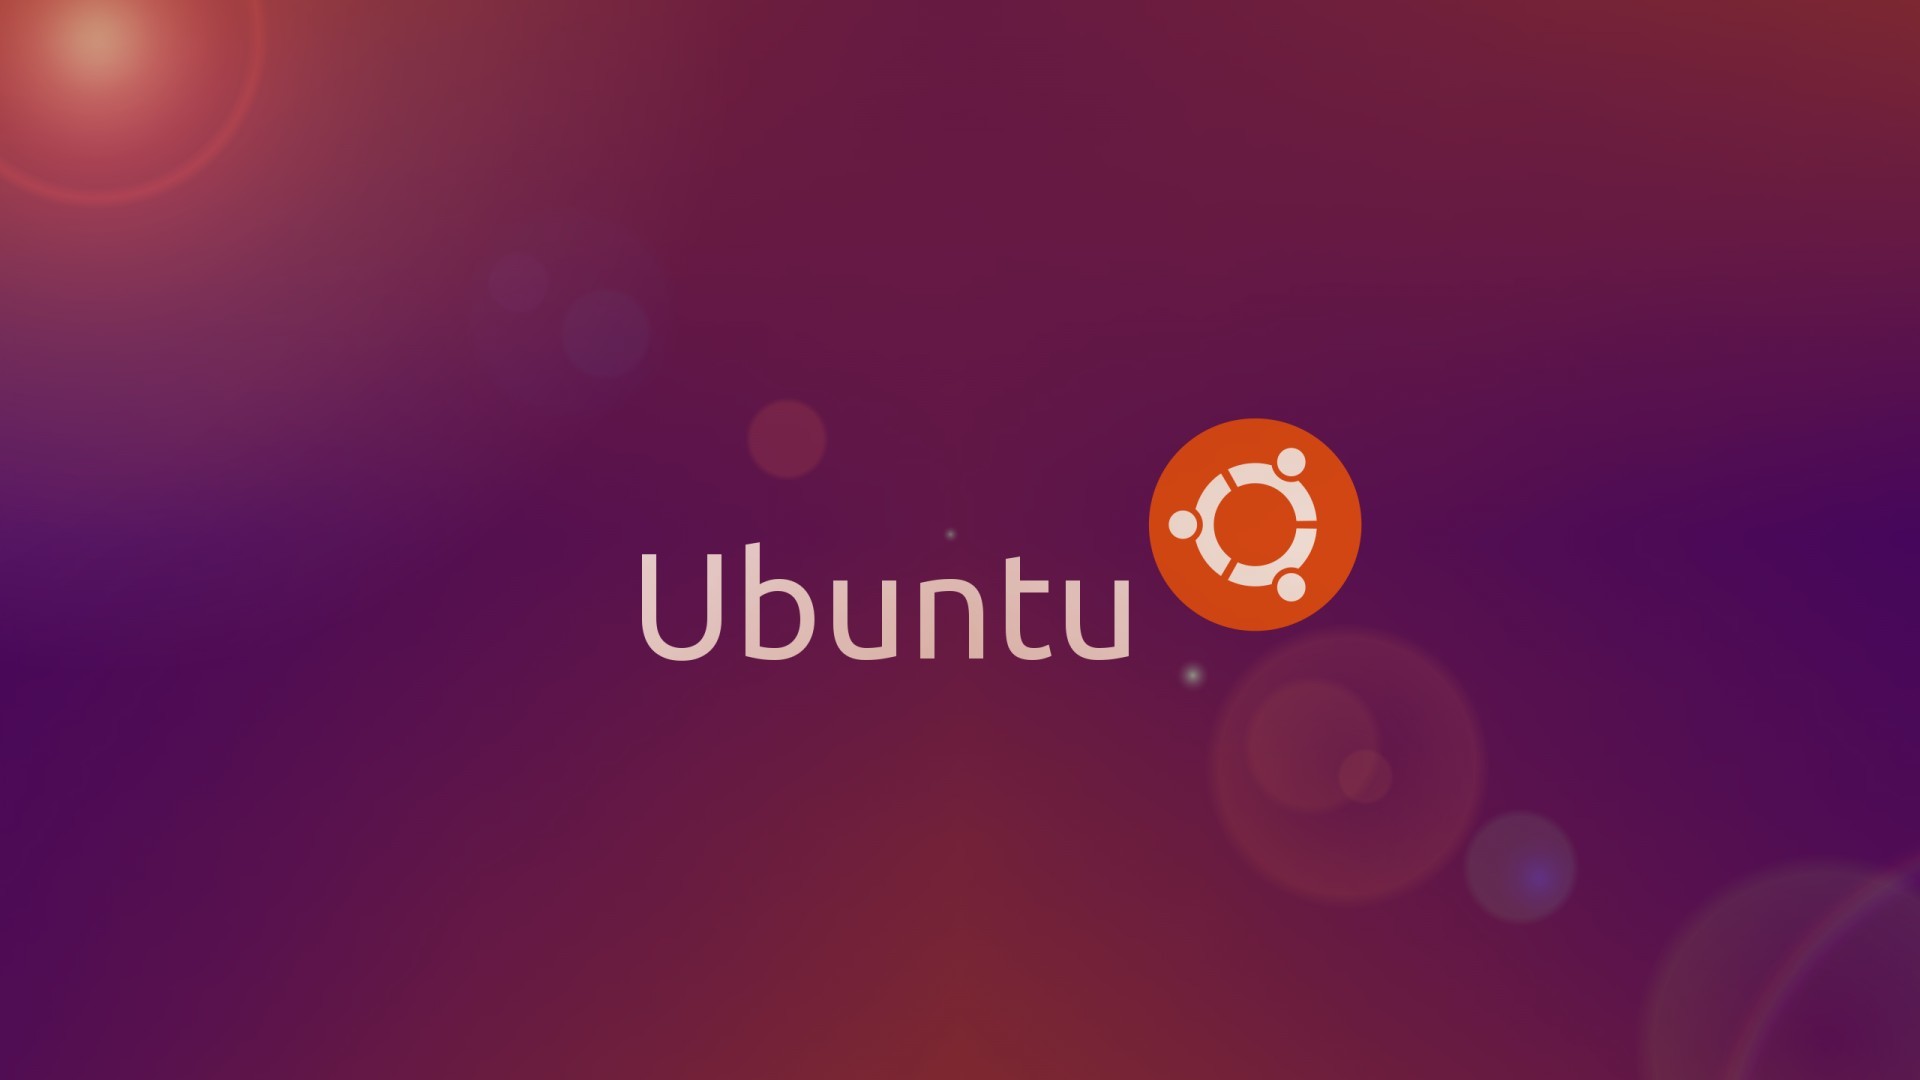 ubuntu fond d'écran télécharger,texte,police de caractère,orange,violet,ciel